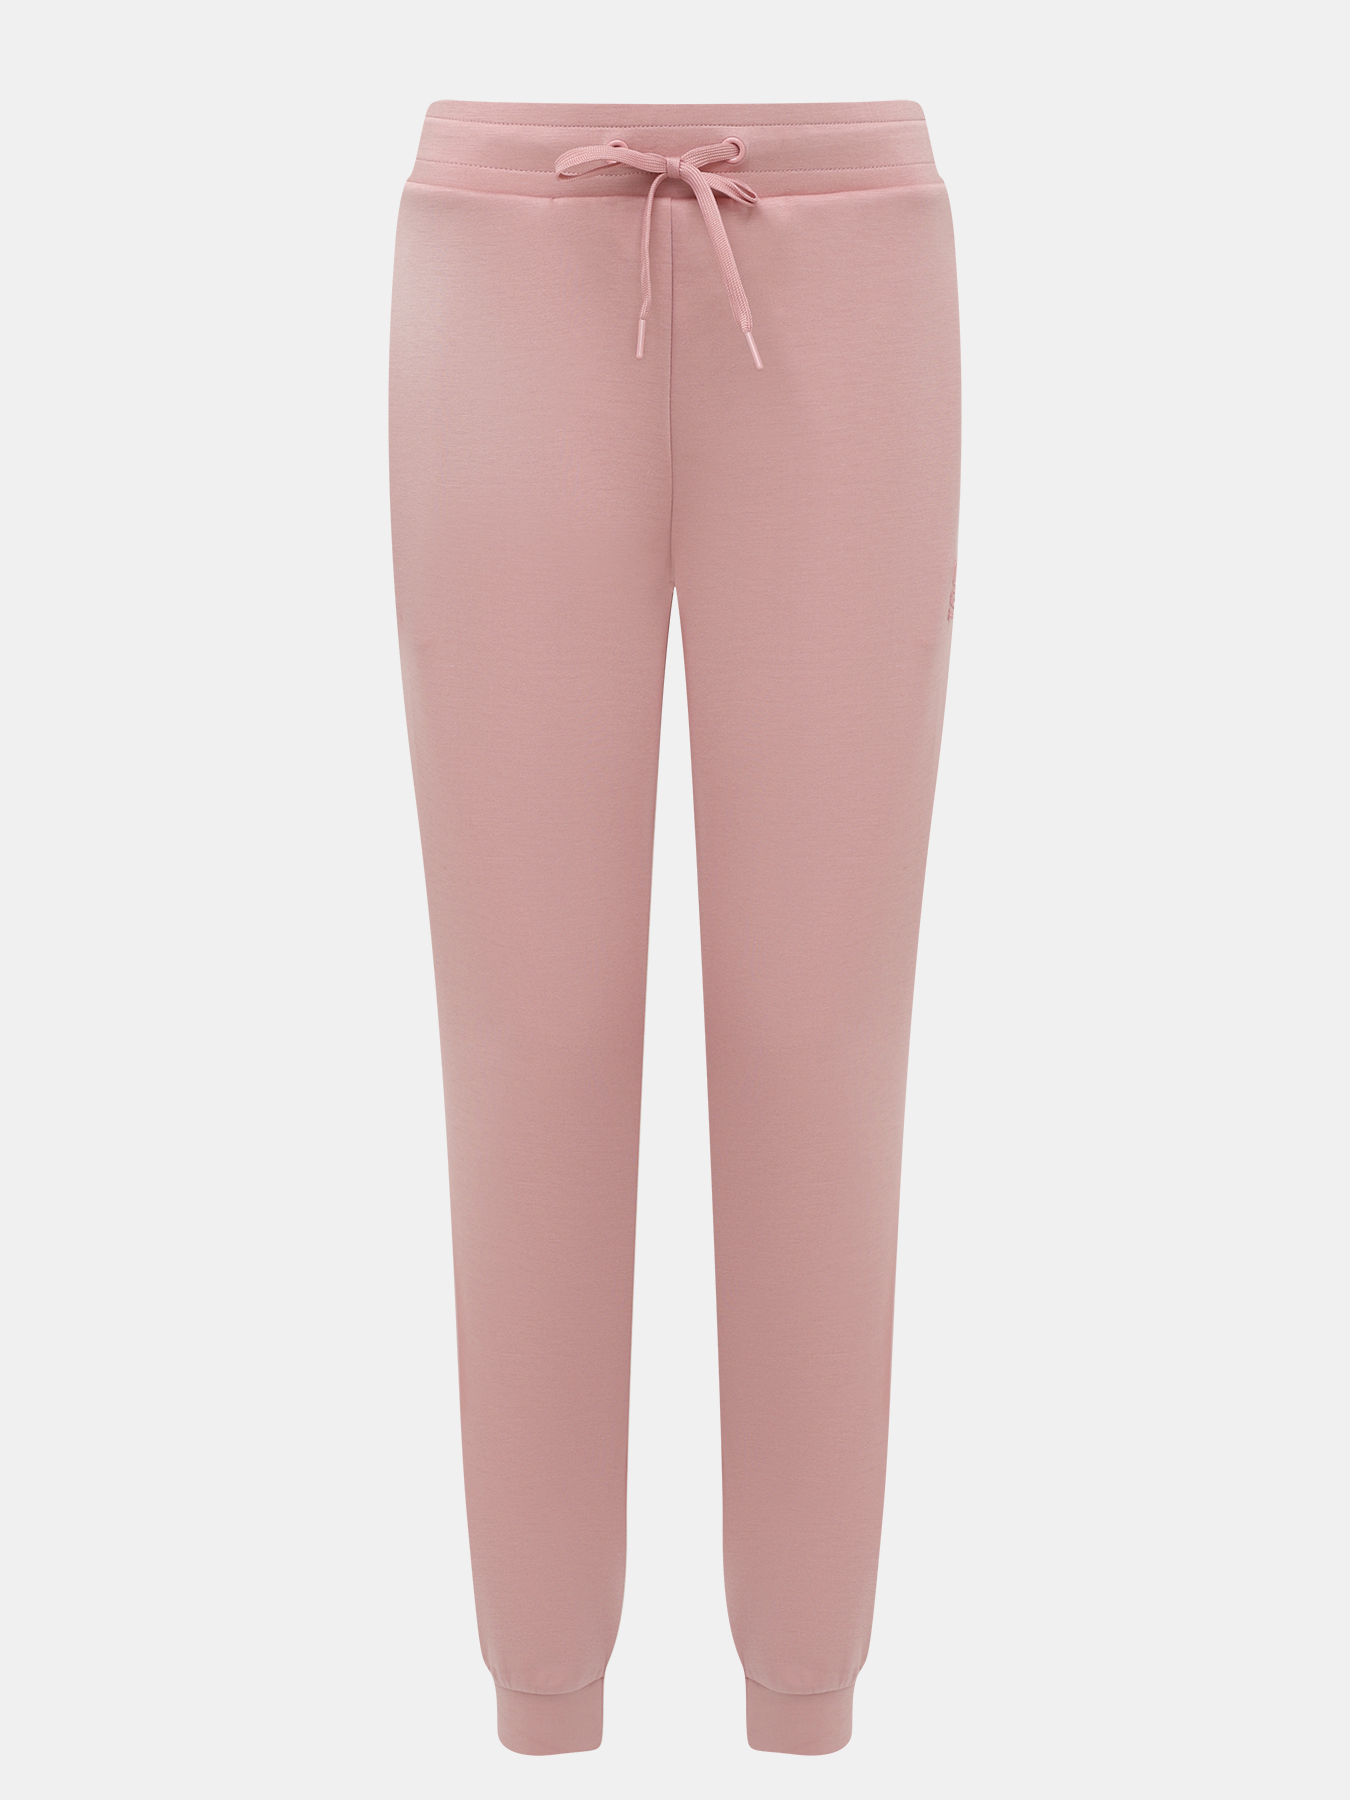 Спортивные брюки женские Orsa Orange 450552 розовые 46 RU